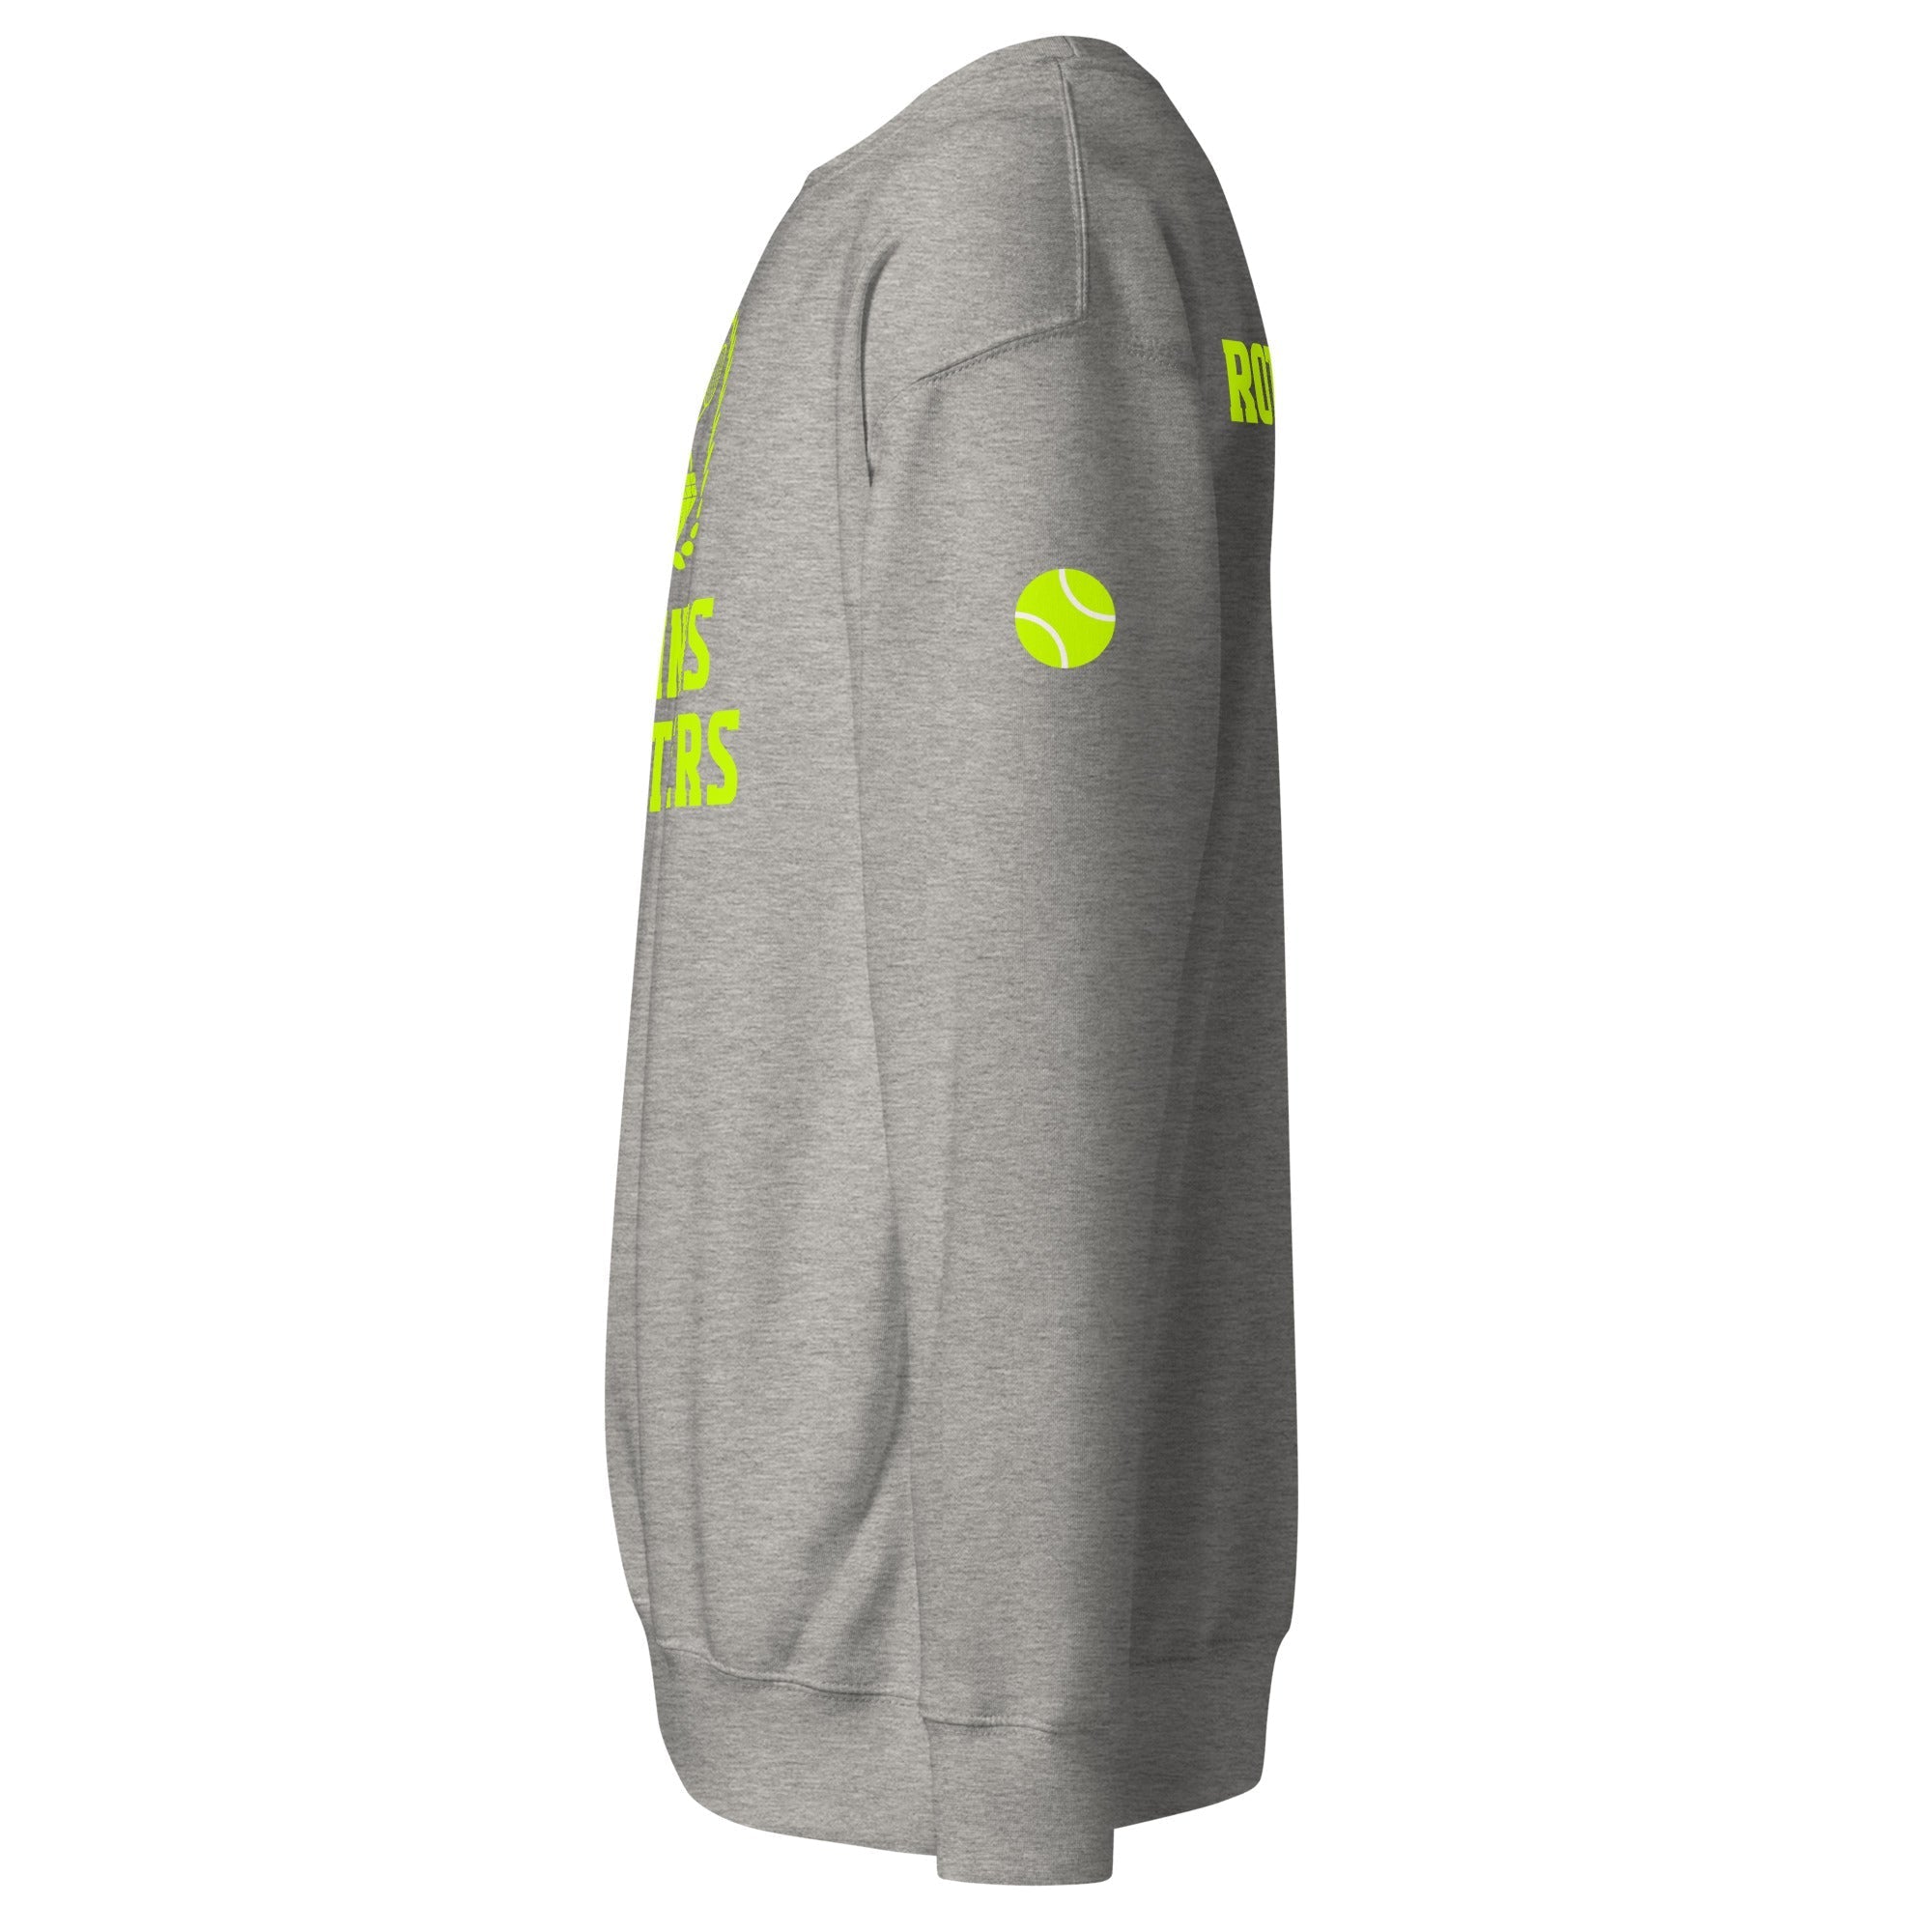 Unisex Premium Sweatshirt - Tennis Masters Rotterdam - GRAPHIC T-SHIRTS